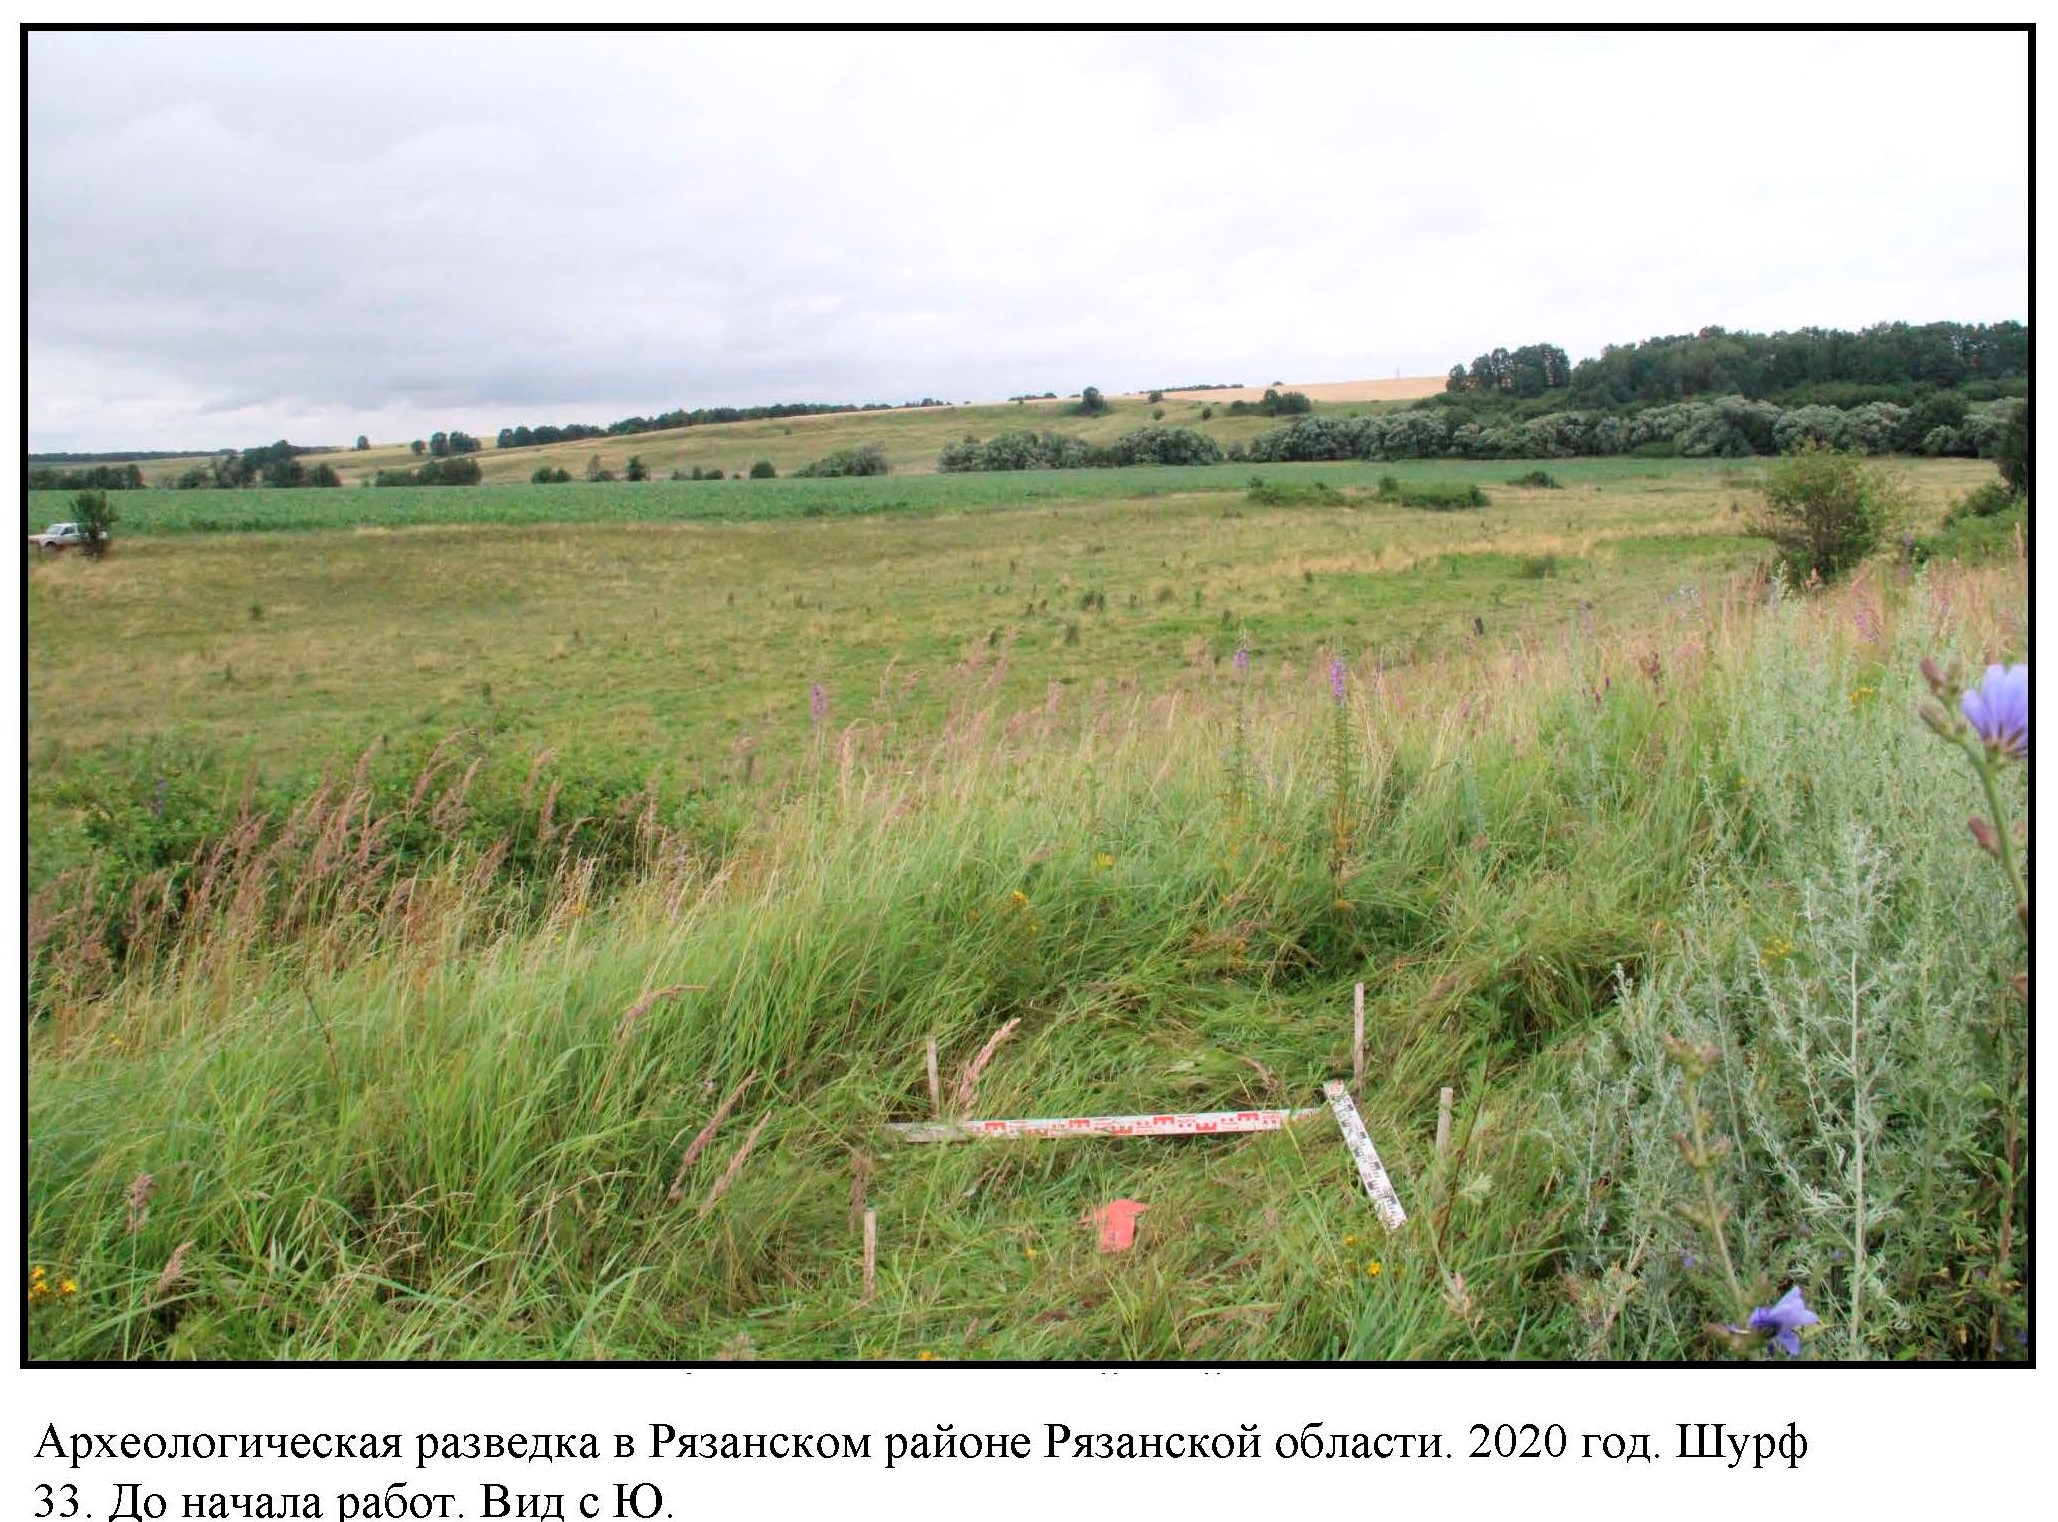 Археологическая разведка на участке реконструкции федеральной автодороги М-5 Урал в Рязанском районе Рязанской области в 2020 году